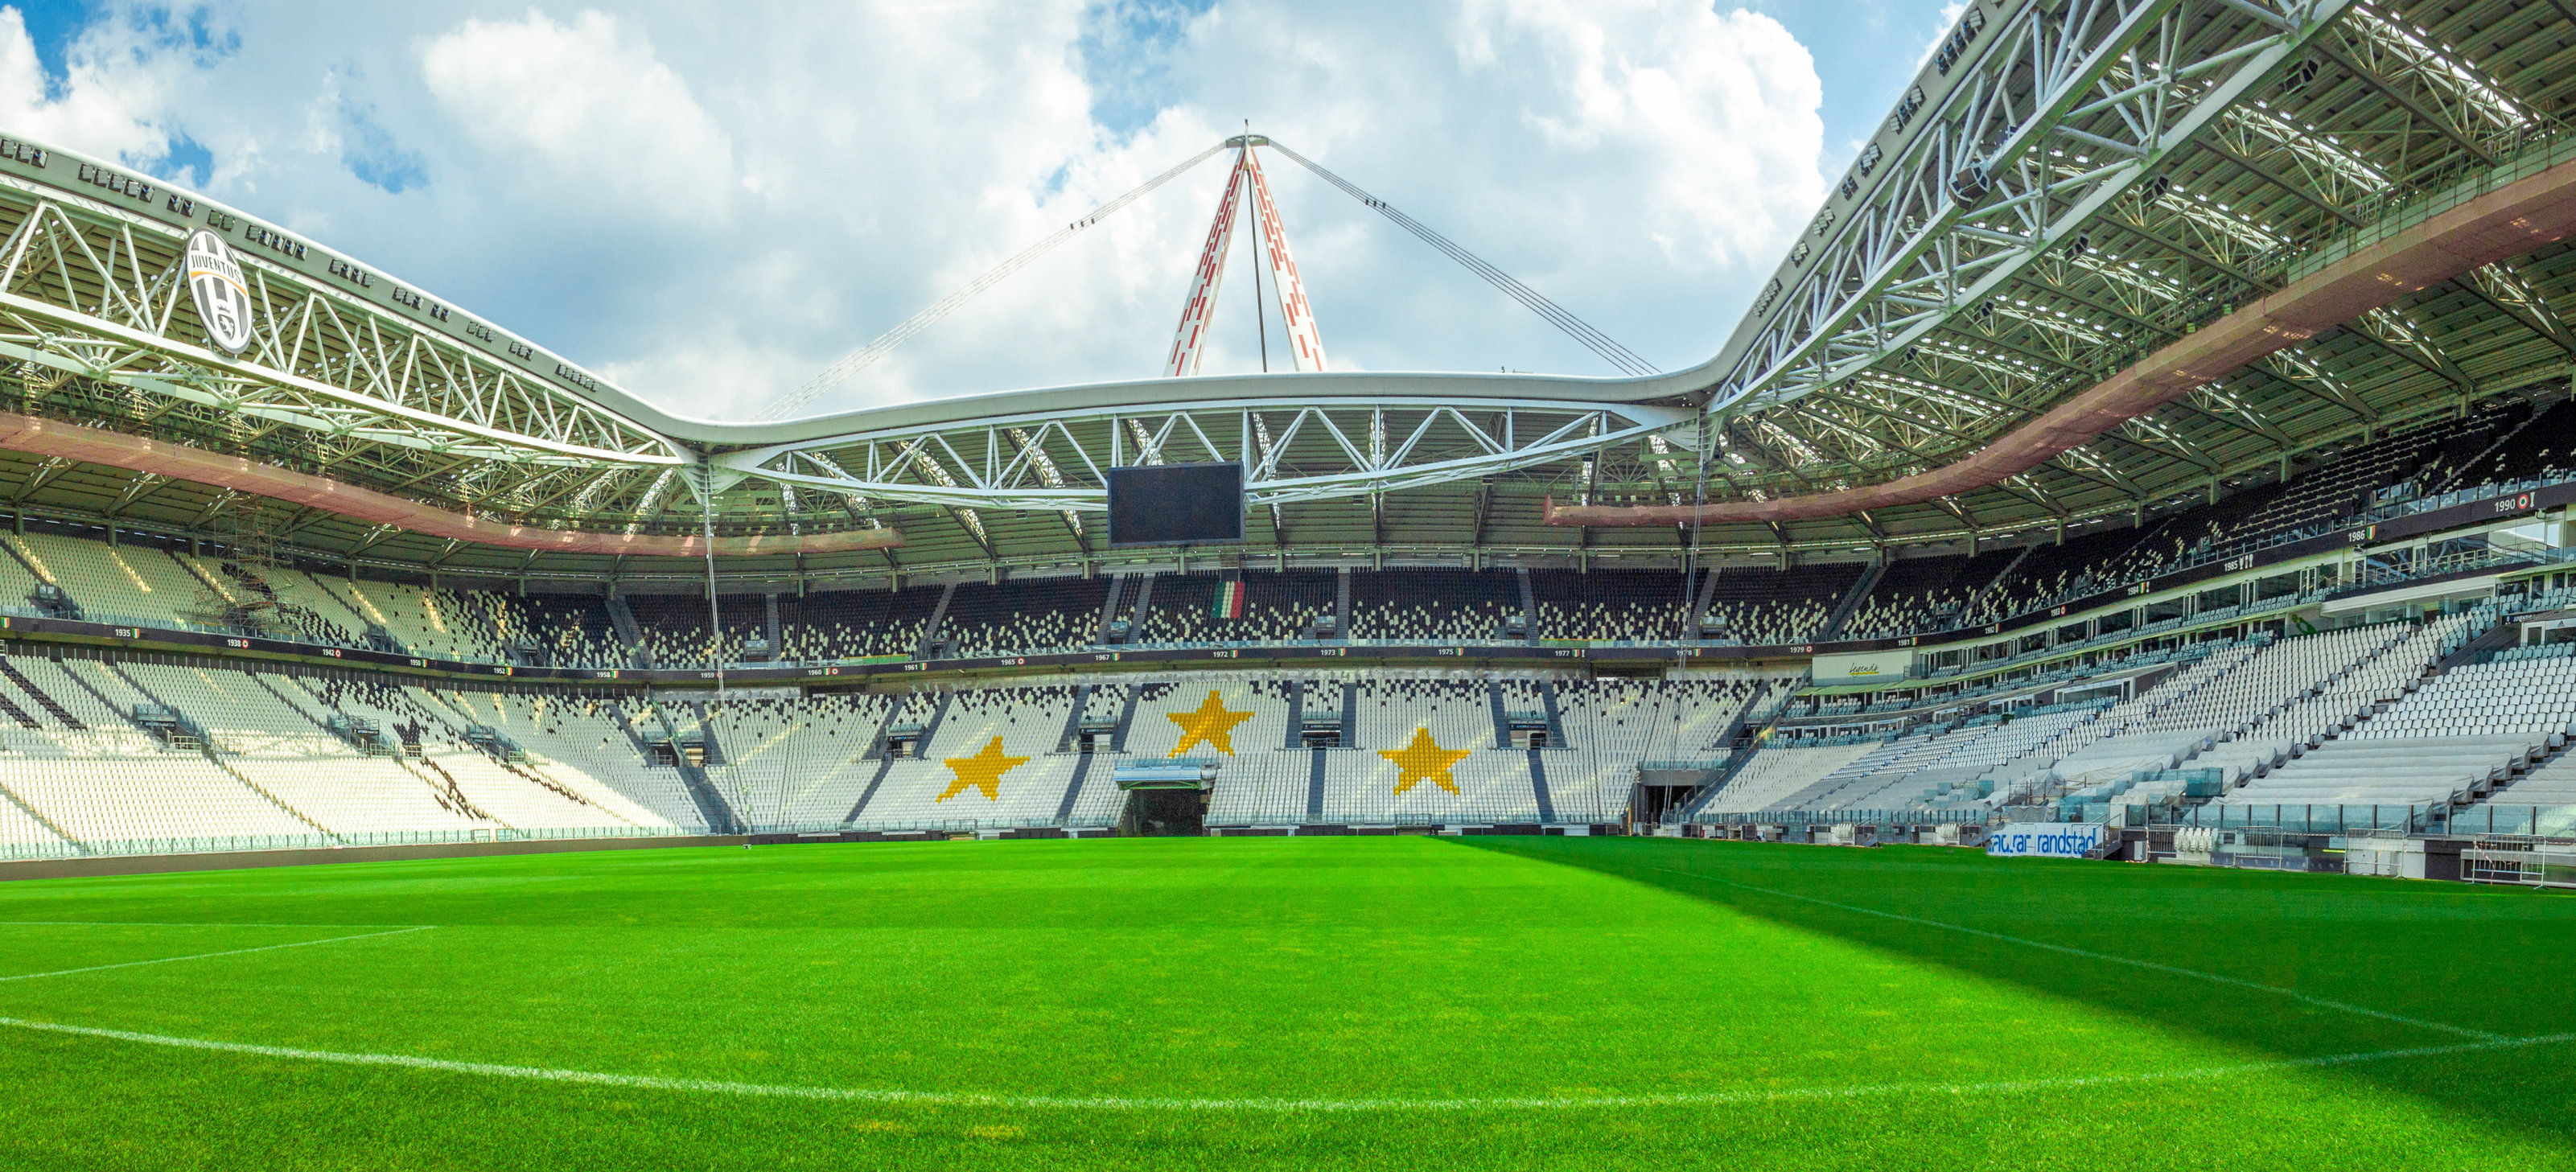 אצטדיון אליאנץ של יובנטוס באיטליה. רק תמורת שם האצטדיון חברות משלמות עשרות ומאות מיליוני ליש"ט